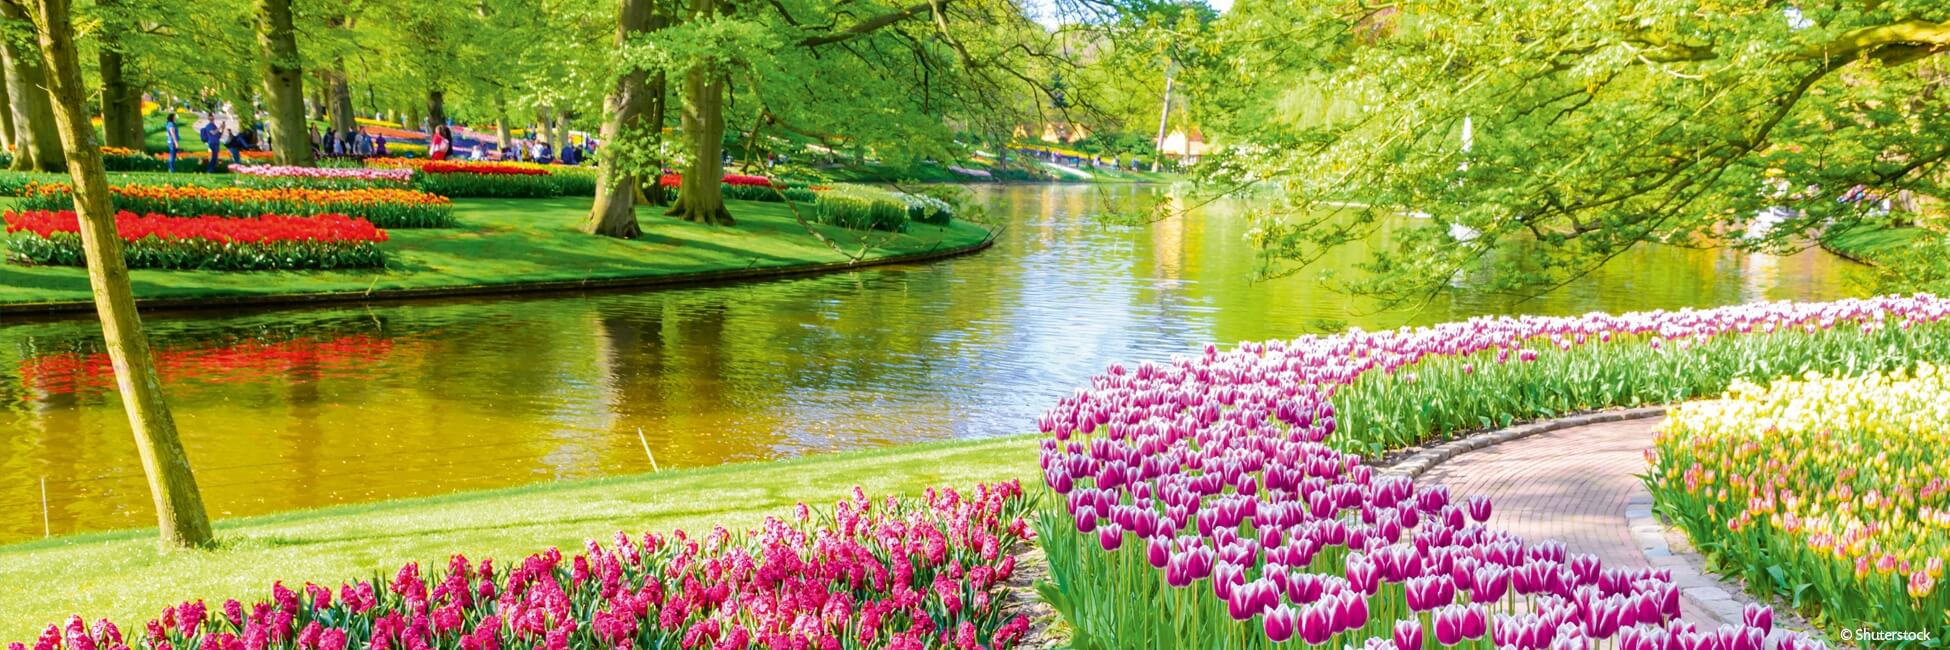 ANV_PP - Crucero fluvial por Holanda, país de los tulipanes